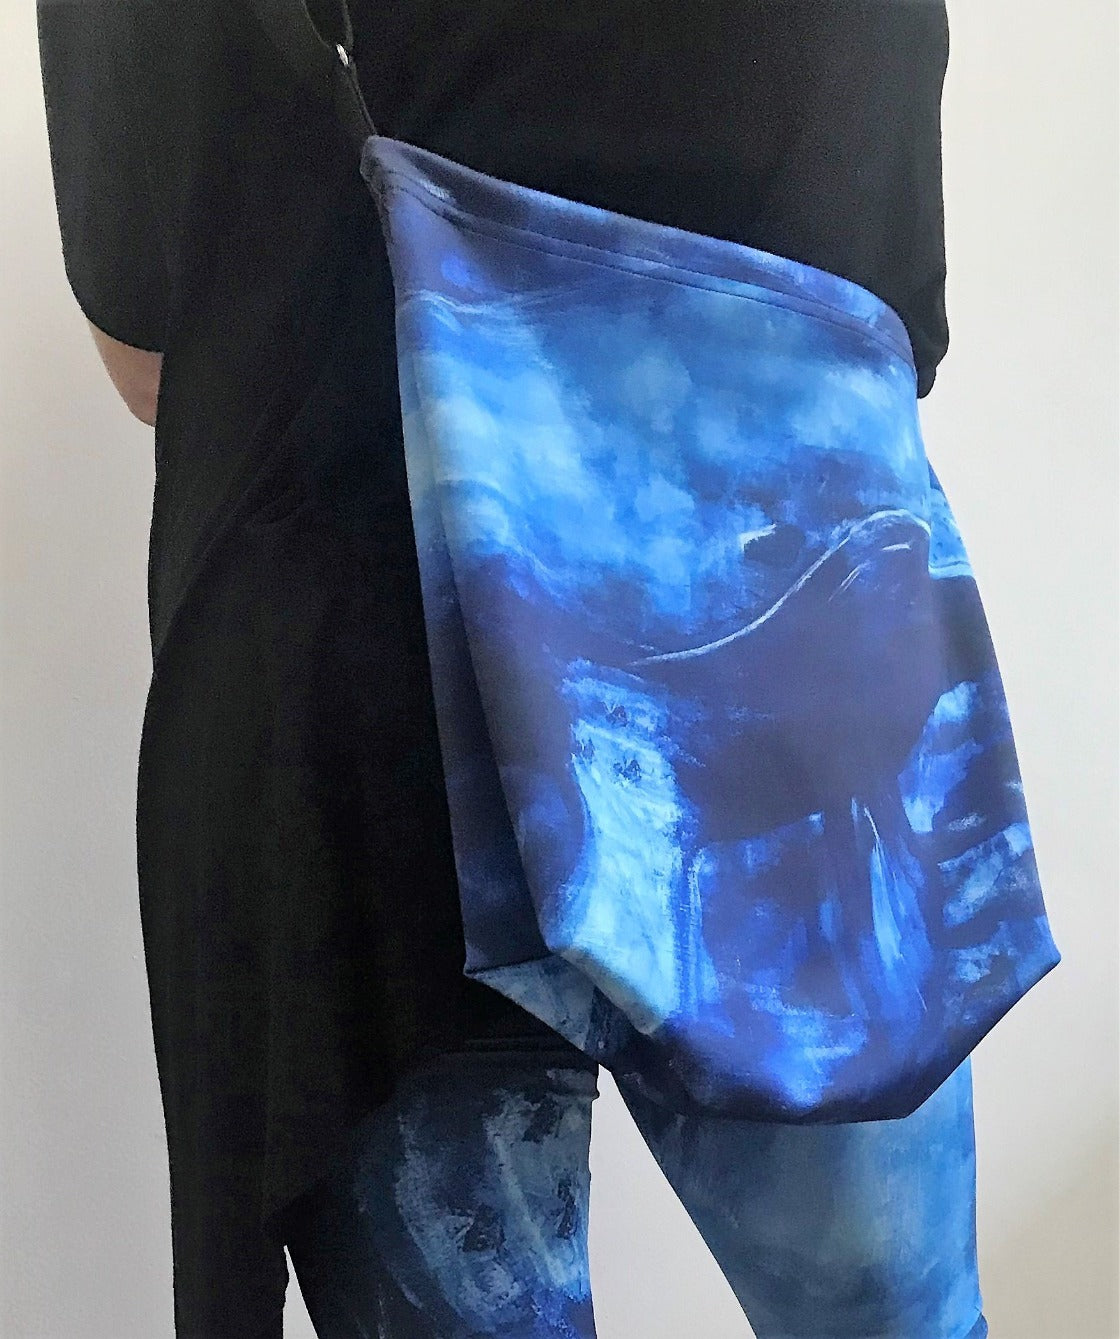 Artist Generations - Big Blue Tote Bag